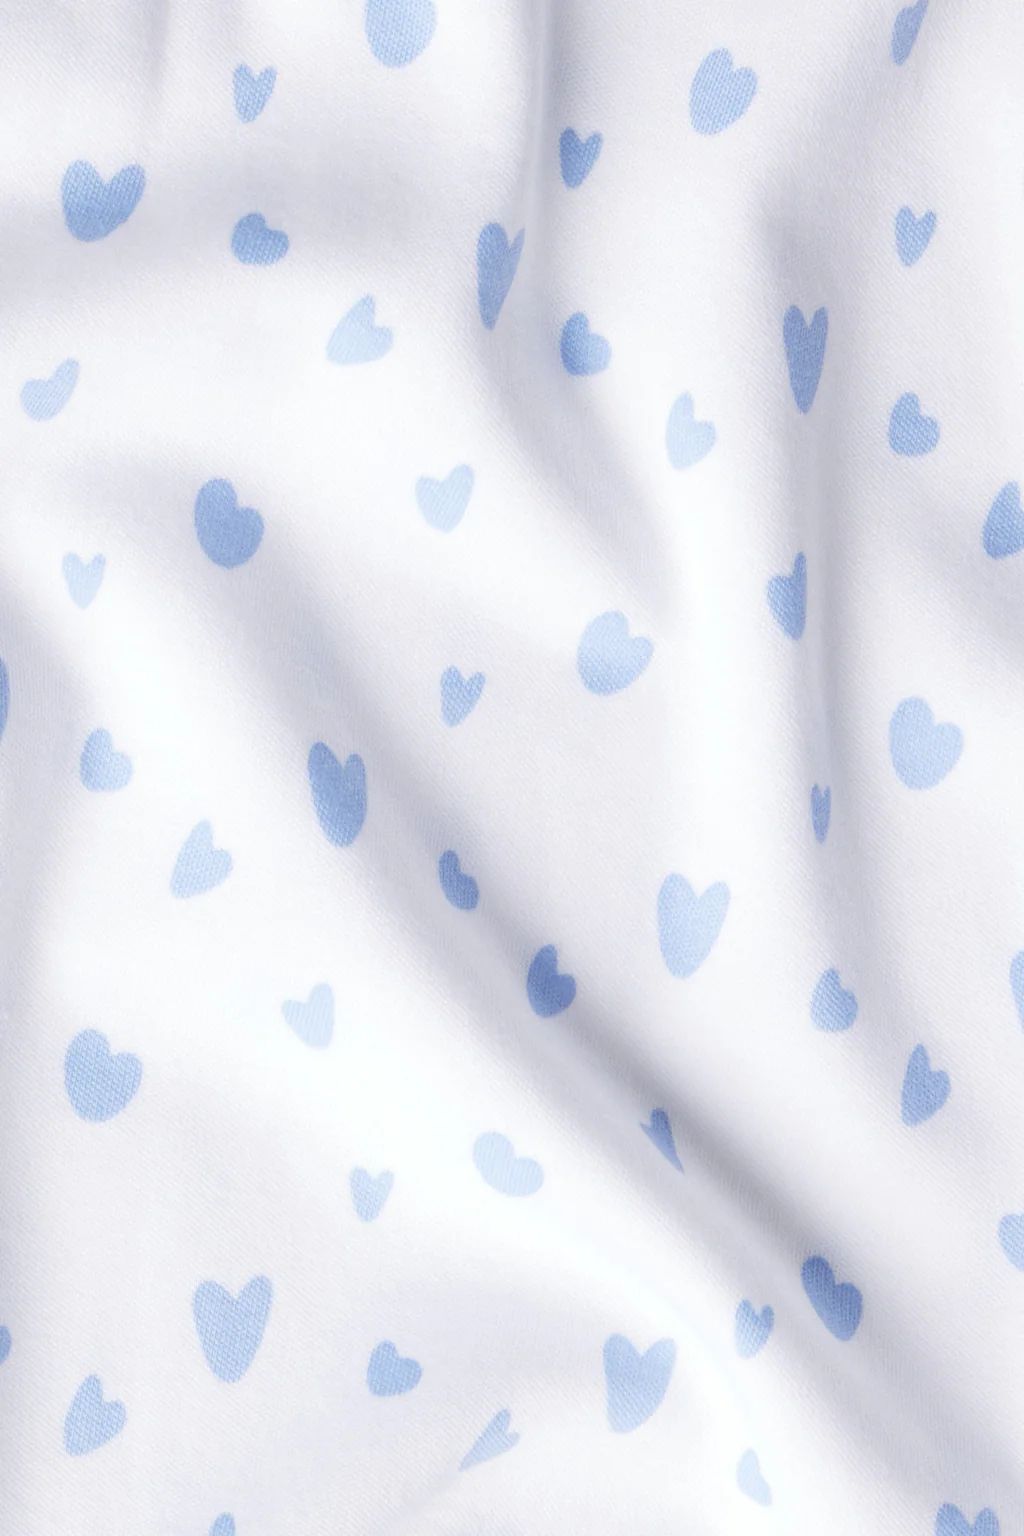 Pima Ruffle Shorts Set in Hydrangea Mini Heart | Lake Pajamas